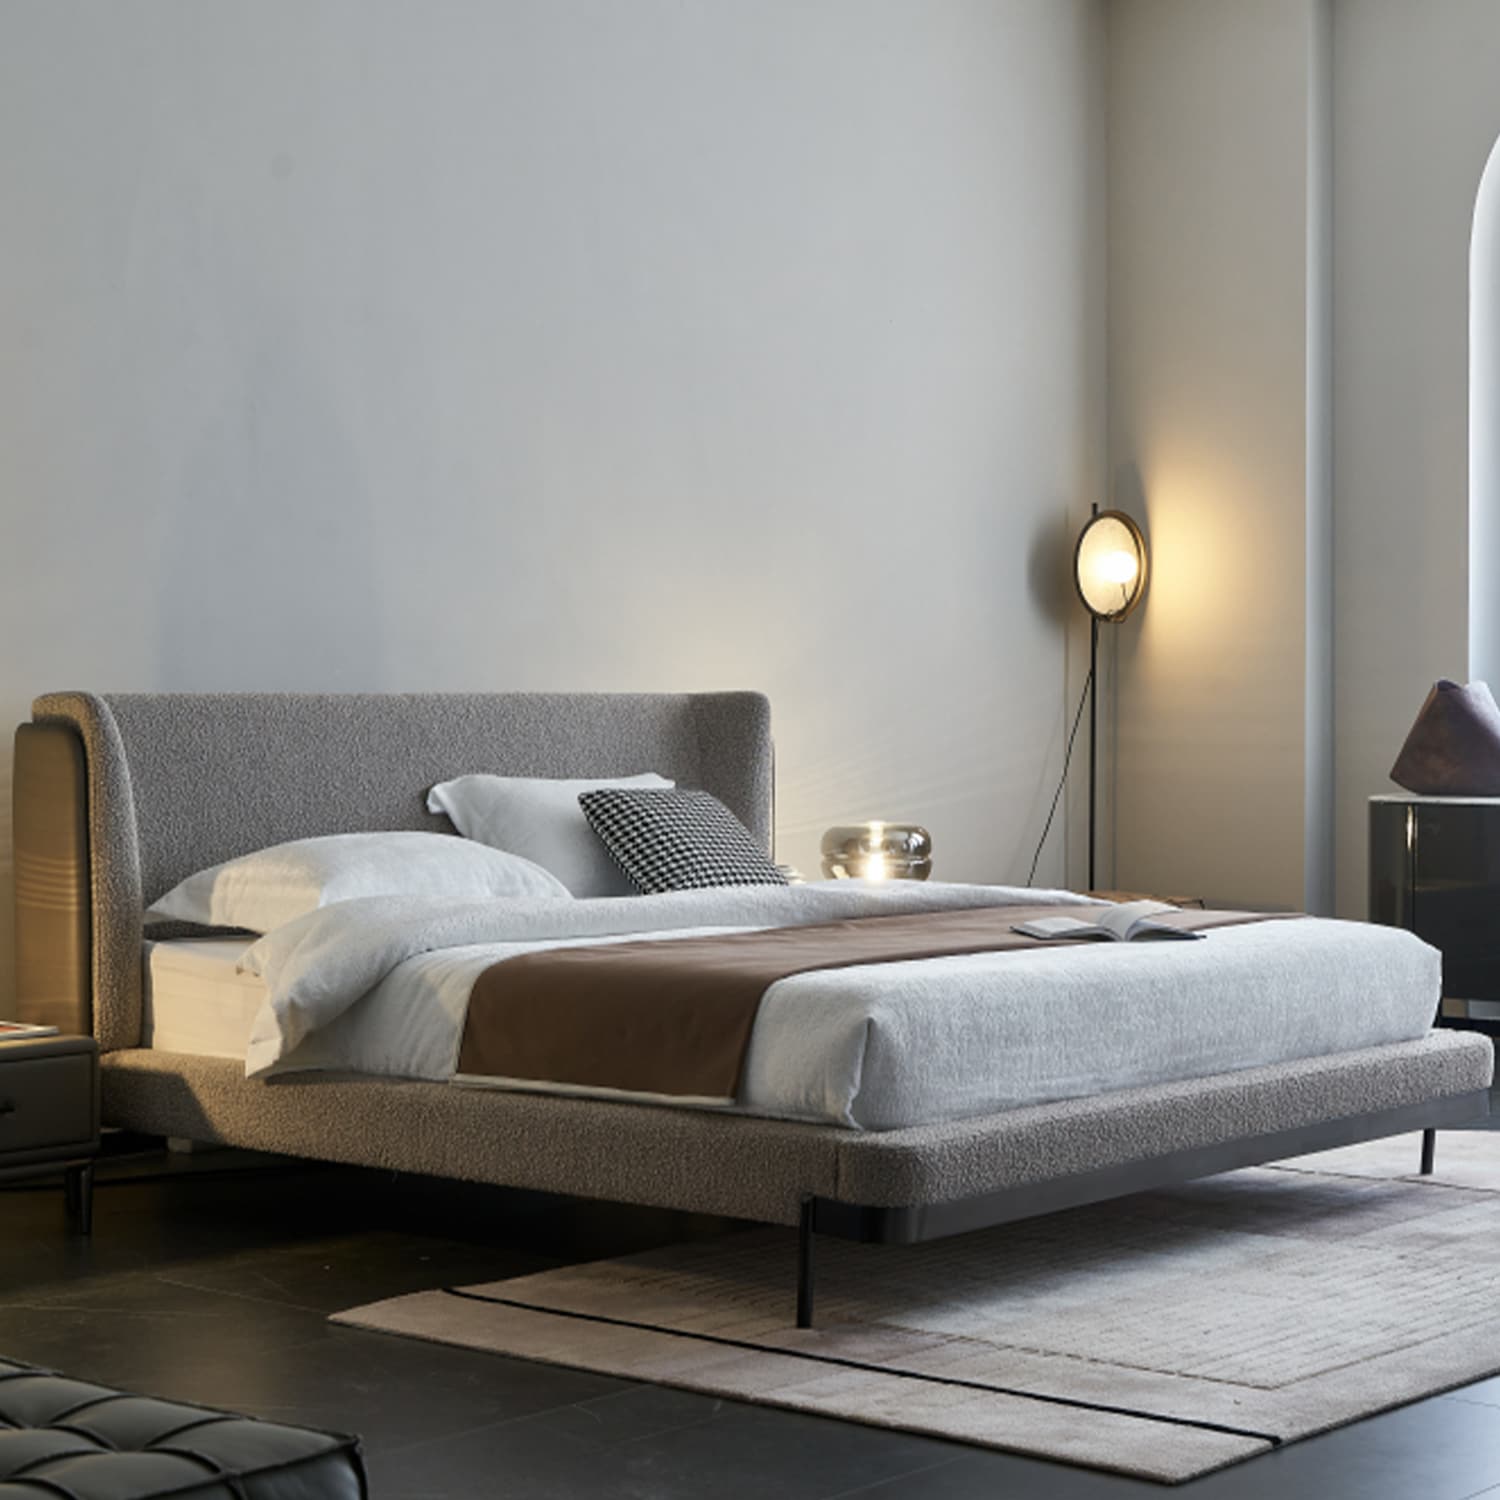 מיטה זוגית מעוצבת דגם ANJI בשני צבעים לבחירה אפור או לבן